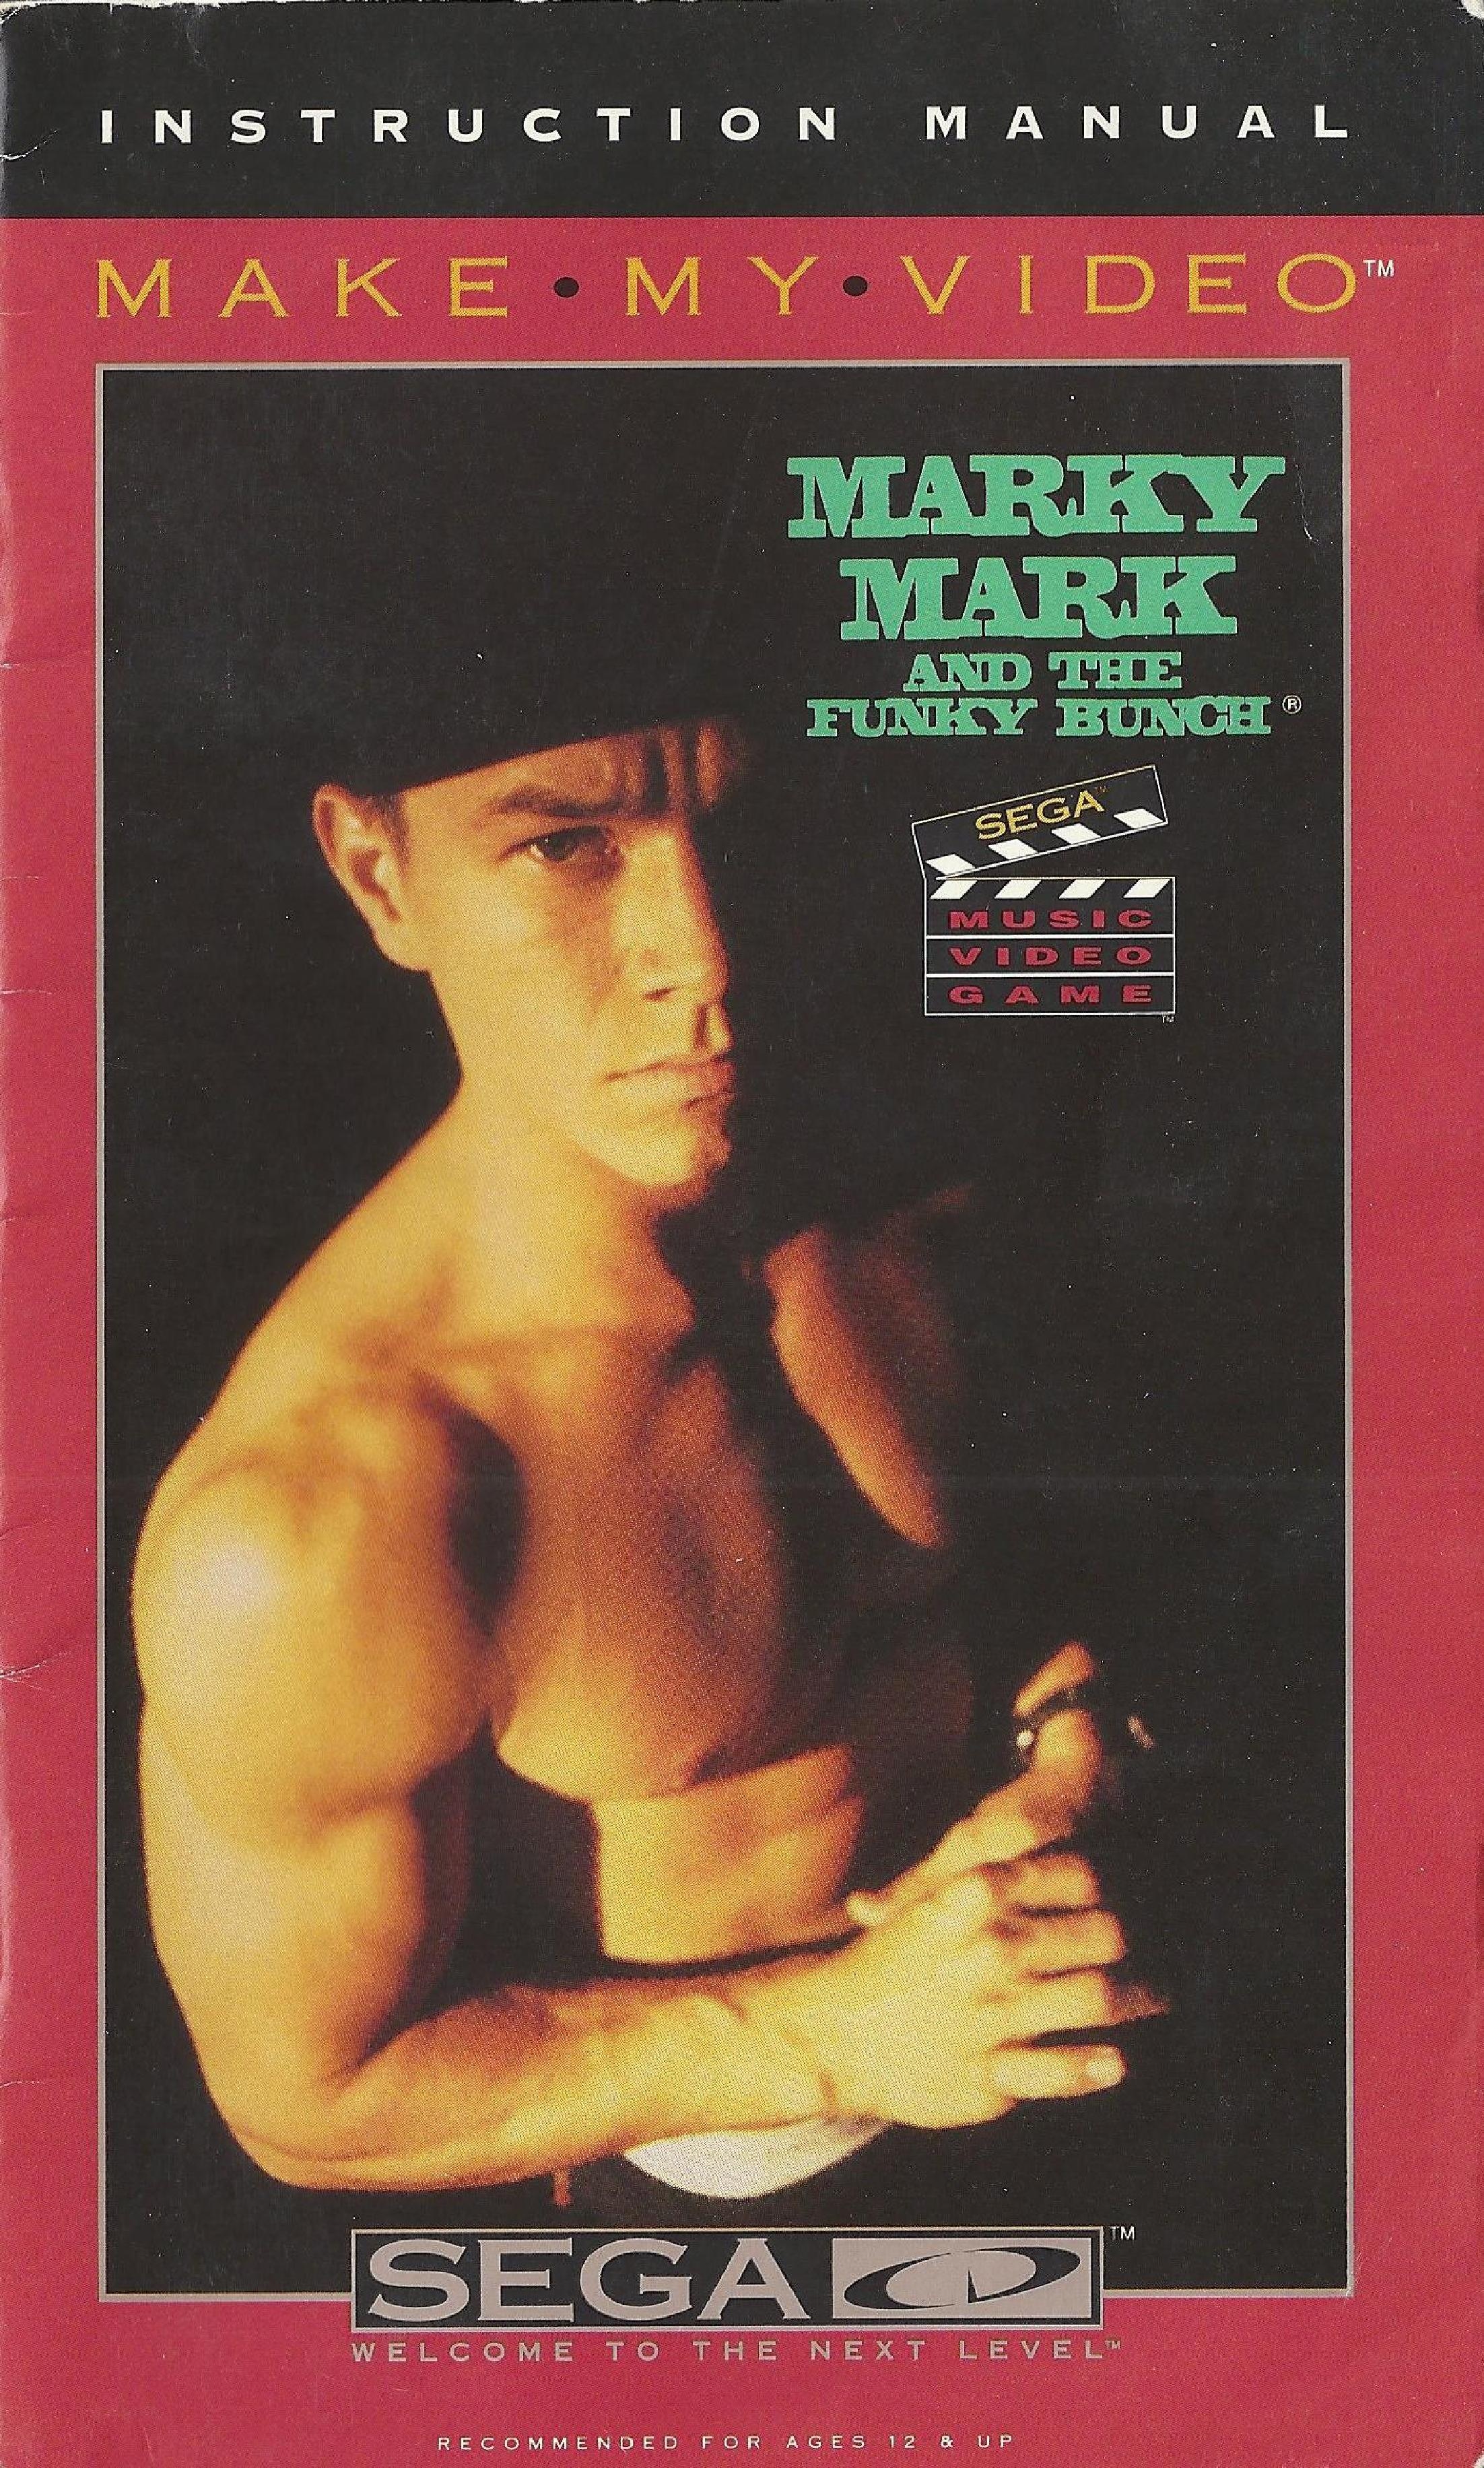 Markymark mcd us manual.pdf